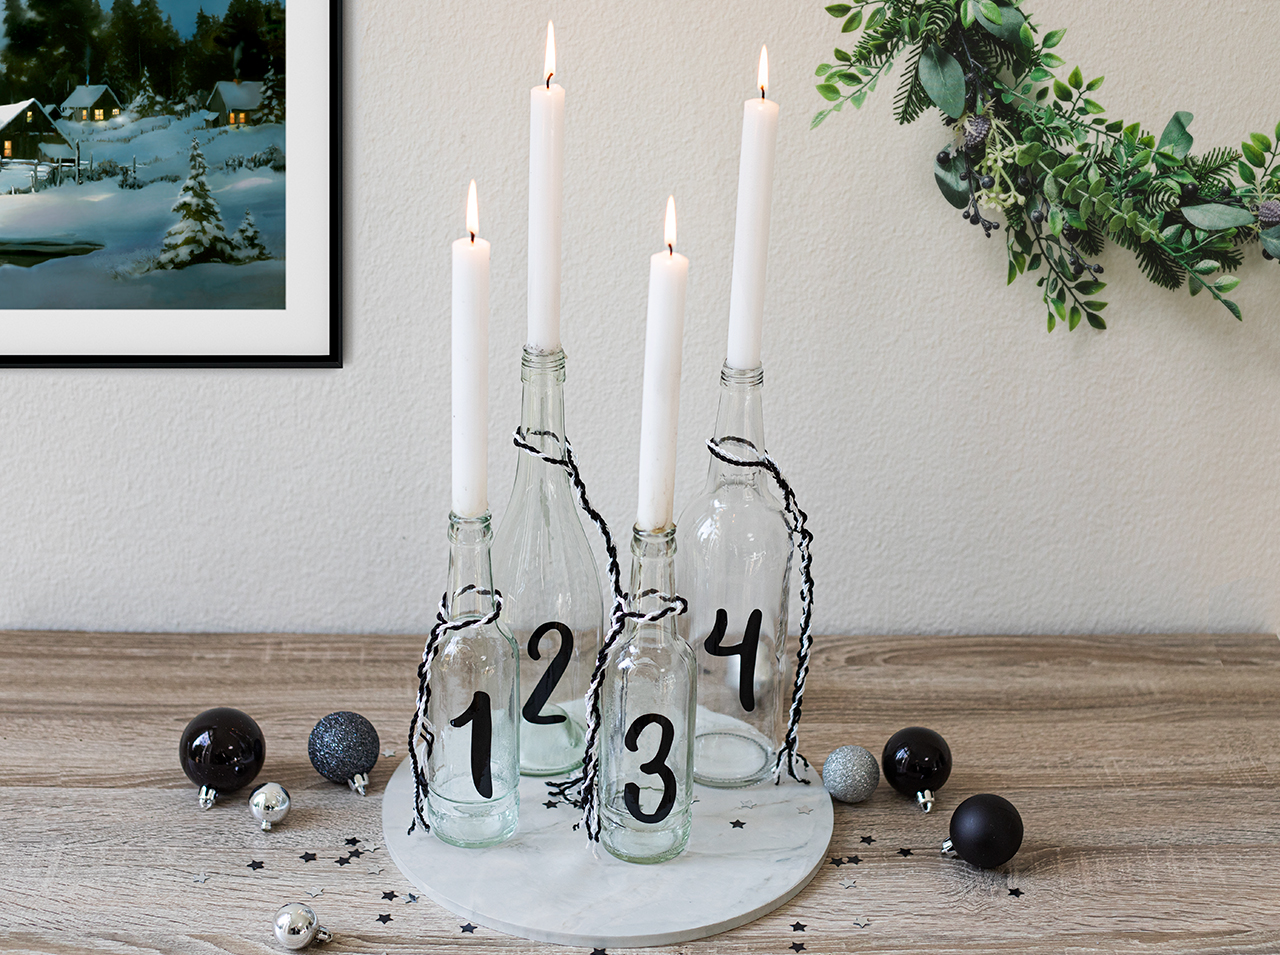 Moderner DIY Upcycling Adventskranz mit Kerzen in Glasflaschen auf einer runden Platte in Marmoroptik.